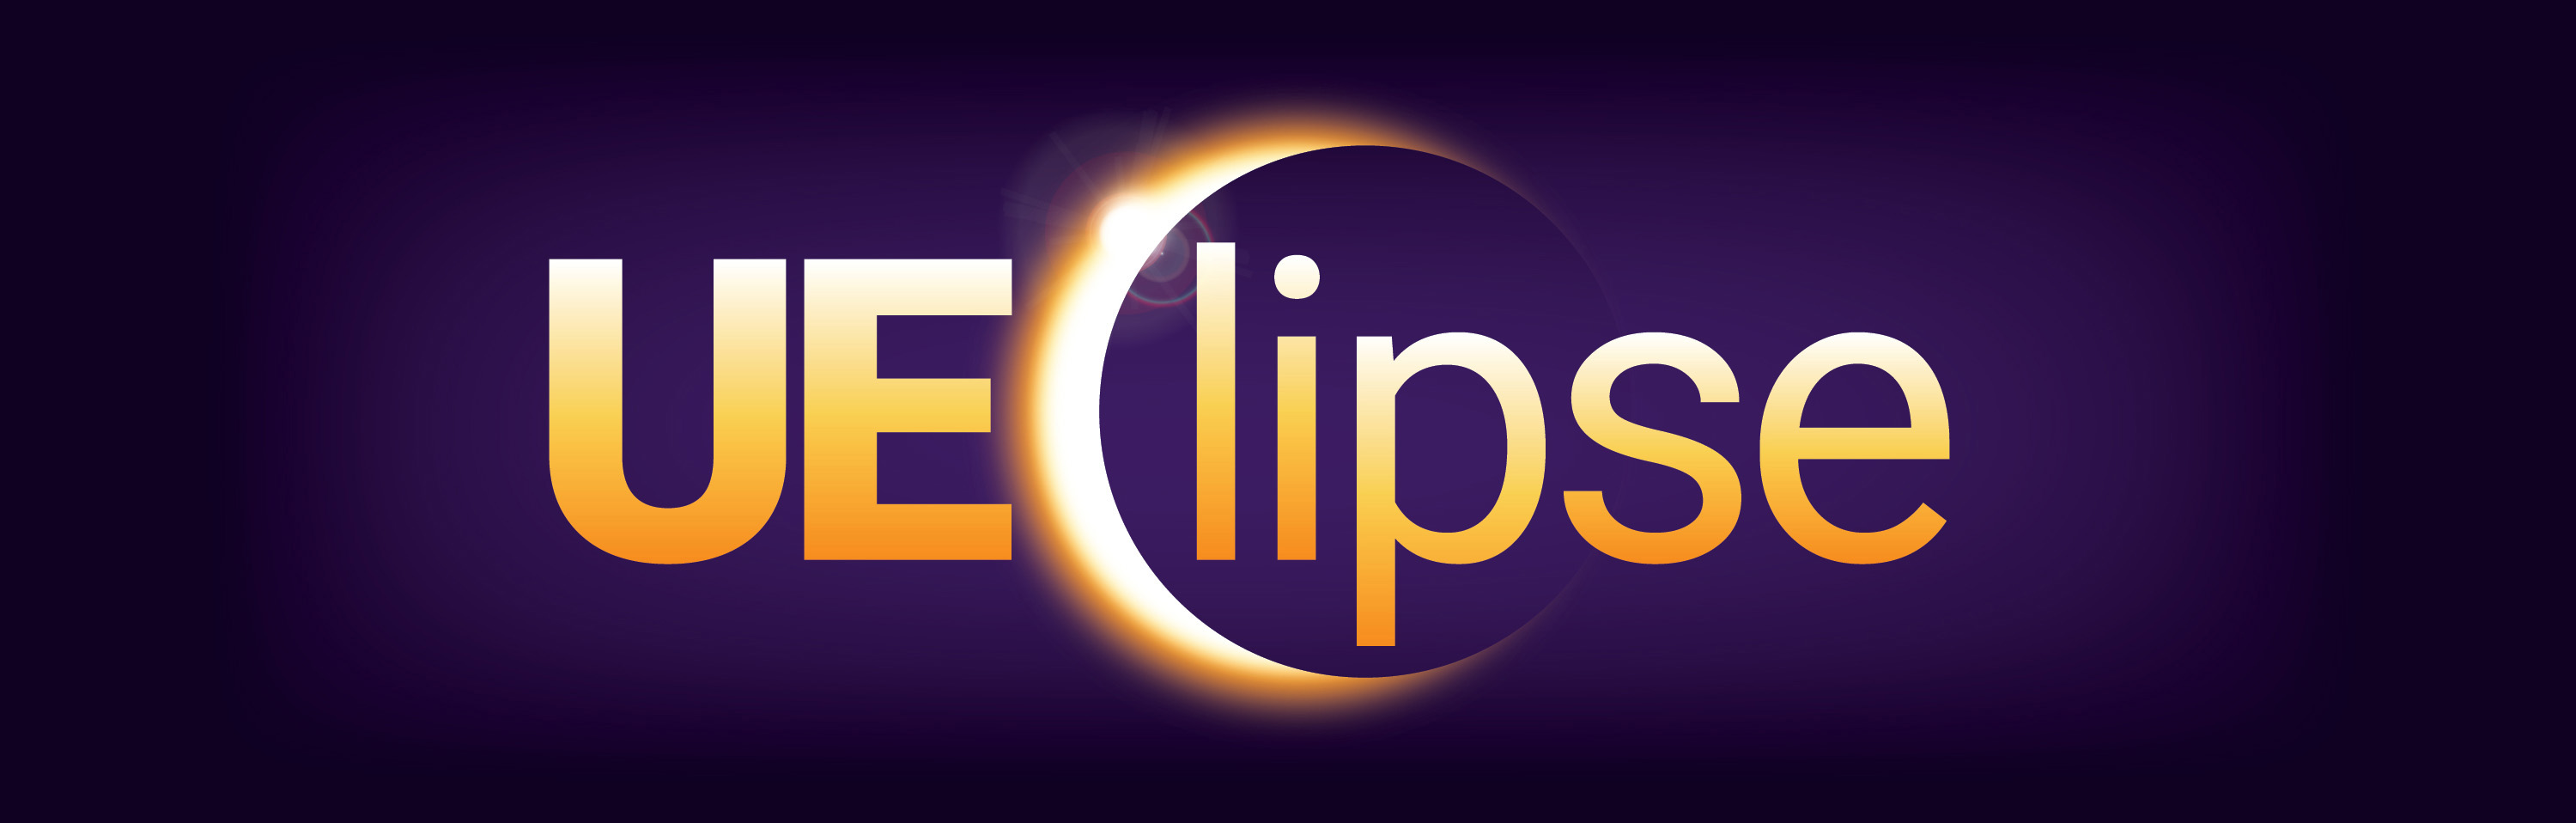 UEclipse Logo banner